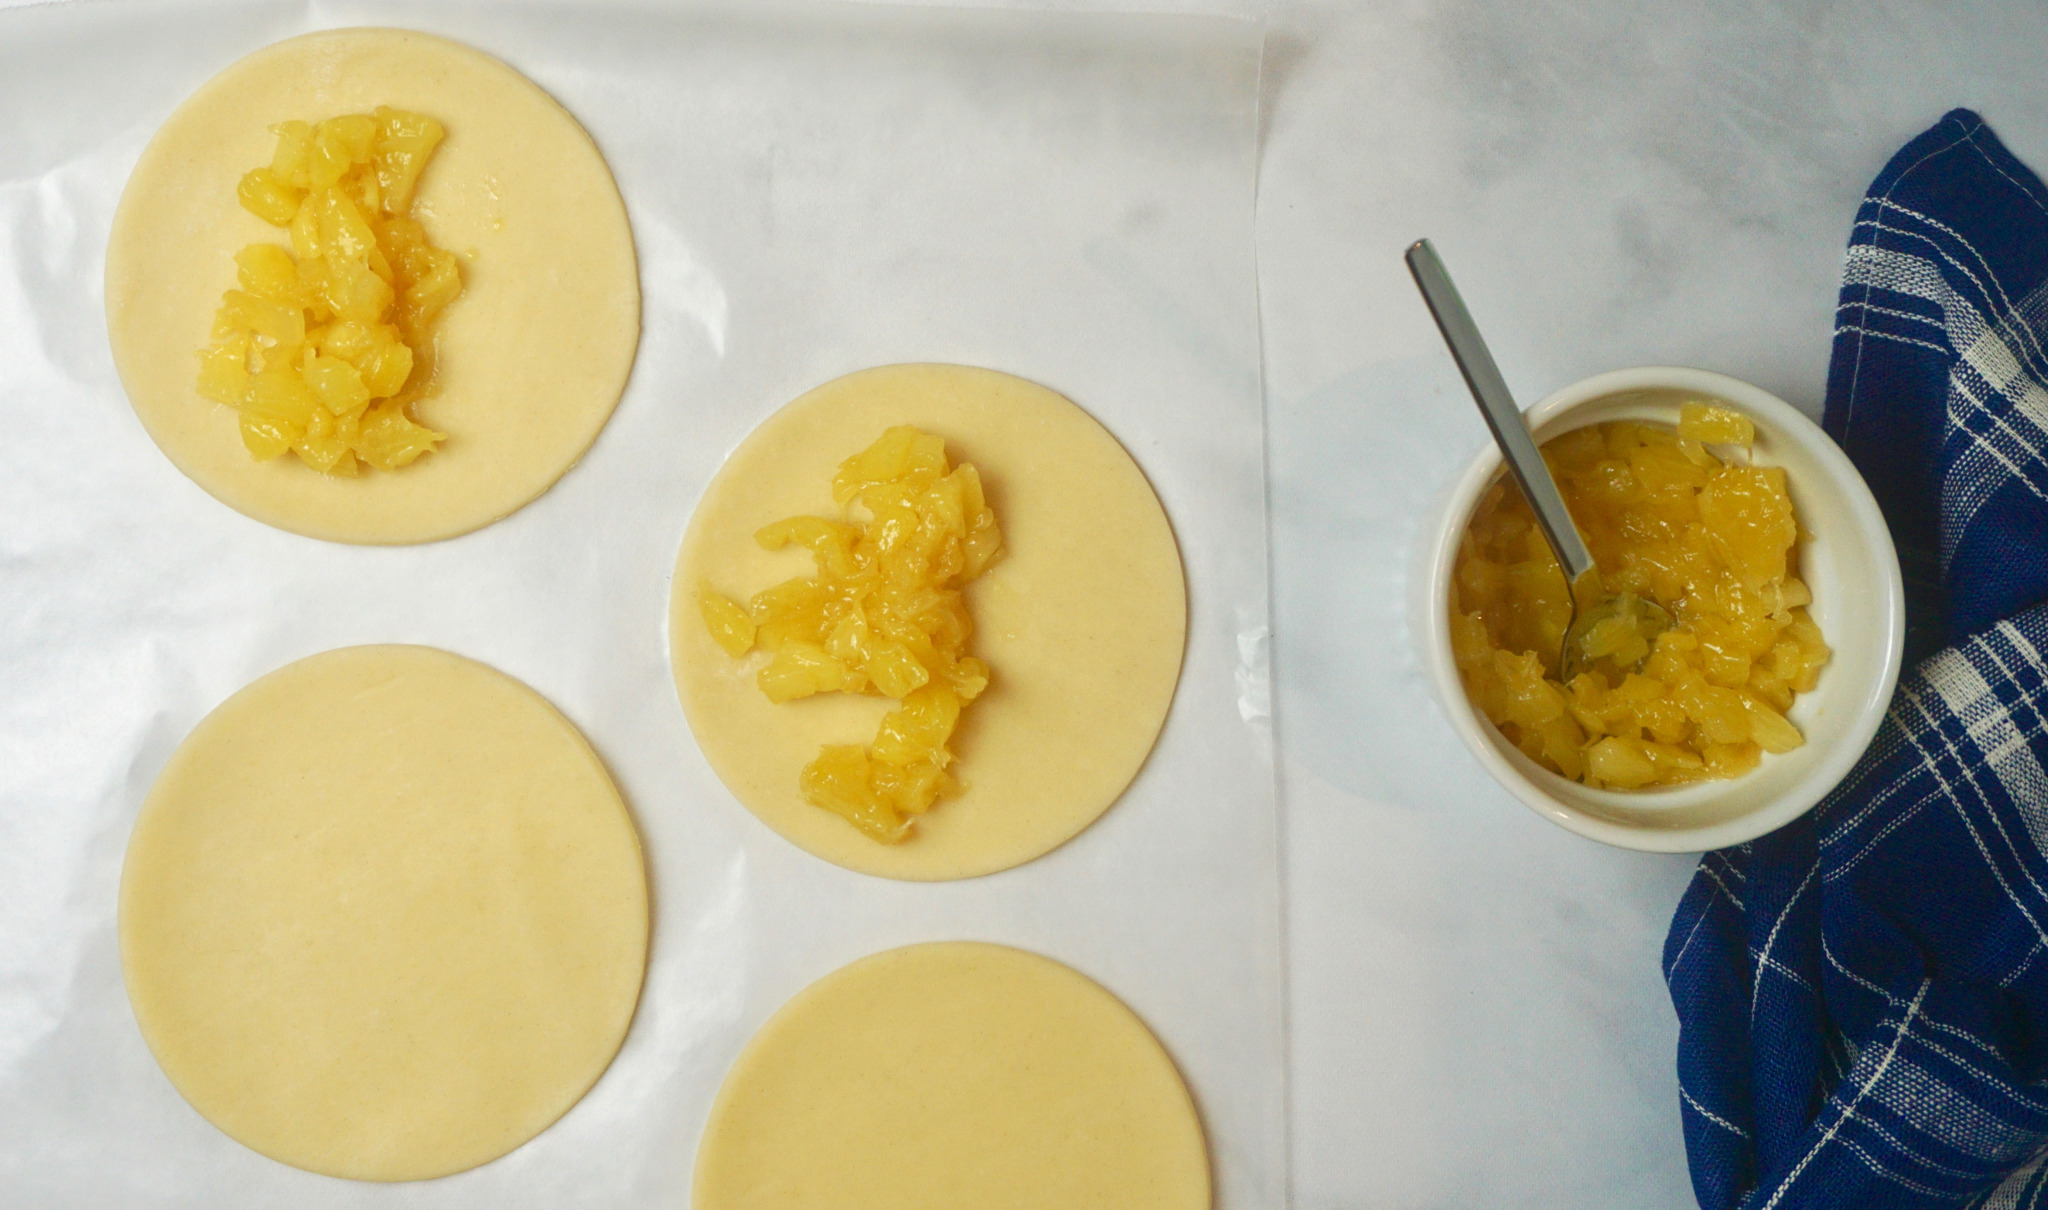 Assembling sweet empanadas